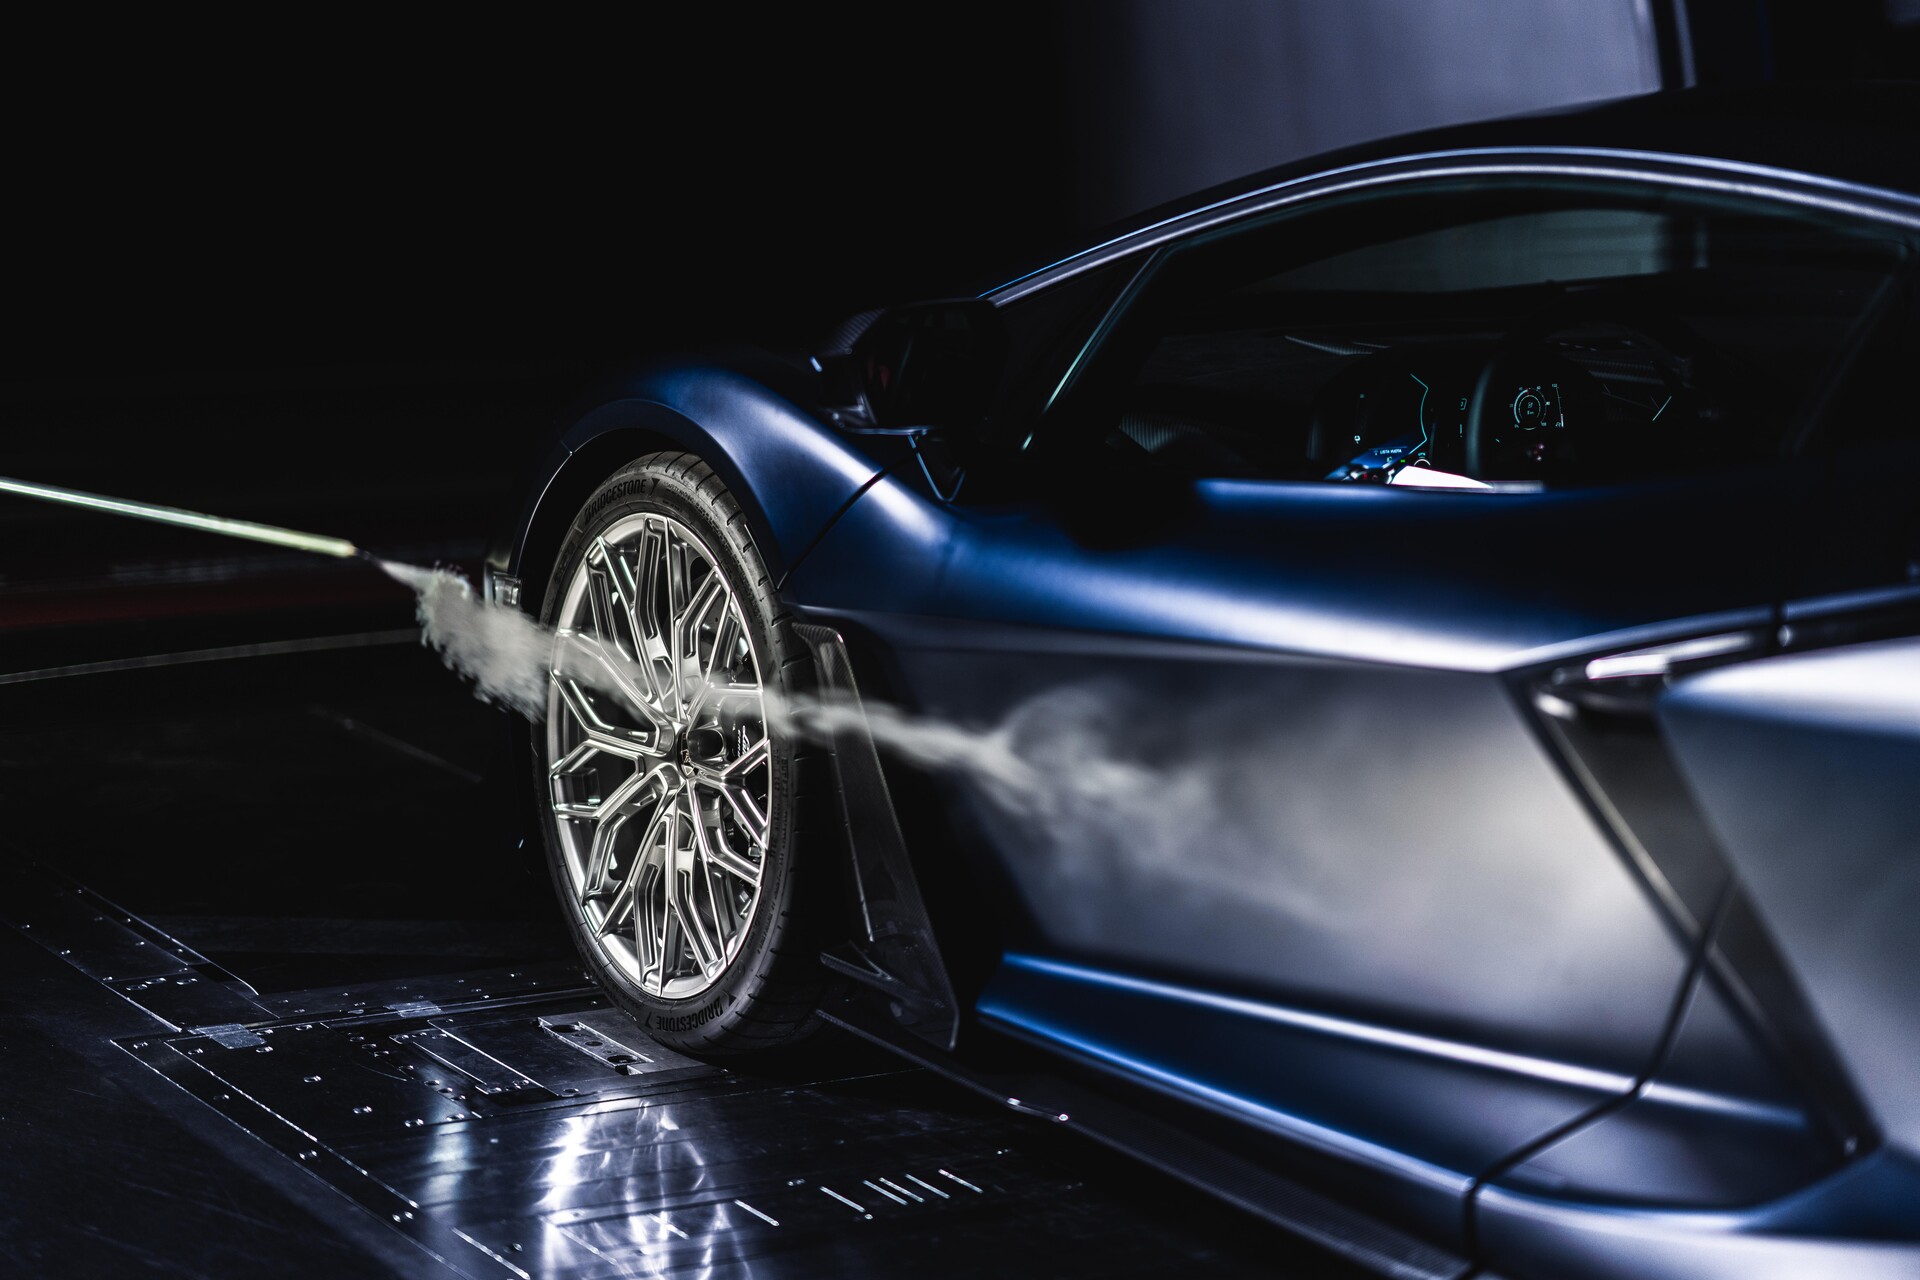 Дизайн і аеродинаміка: відео «Beyond design, mastering the air» від Automobili Lamborghini